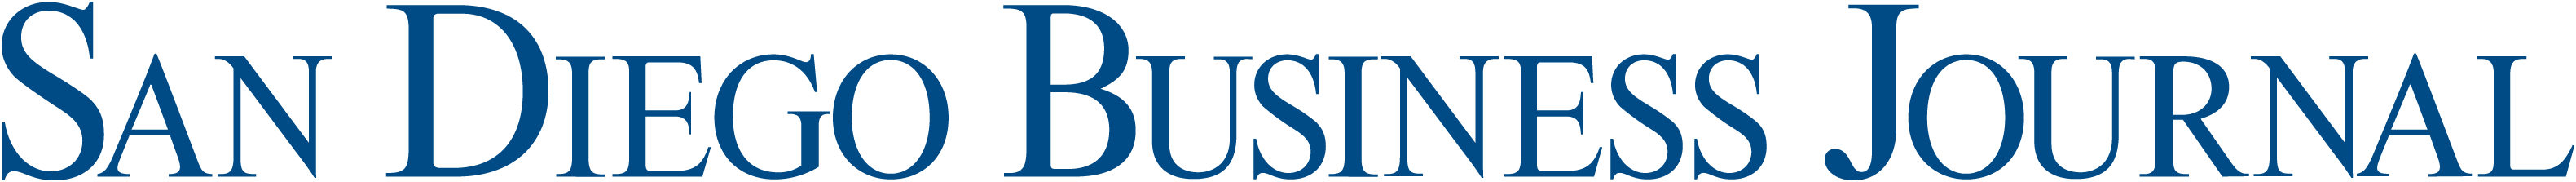 San Diego Business Journal Logo